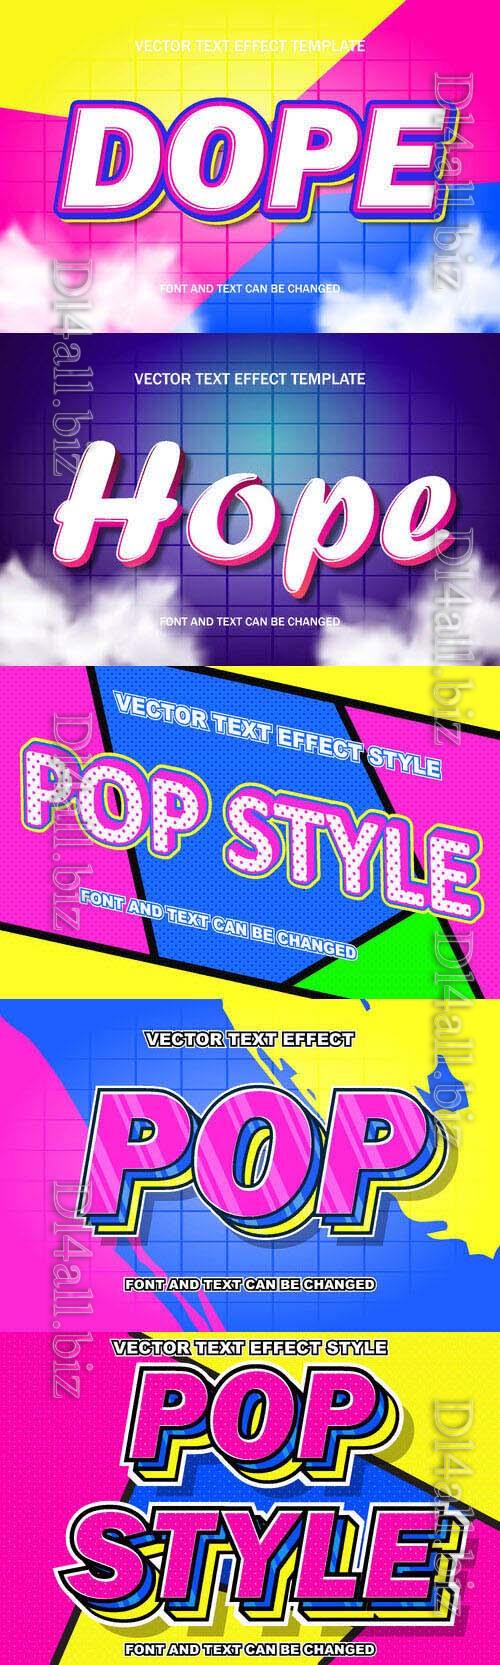 Vector 3d text editable, text effect font design  set vol 82